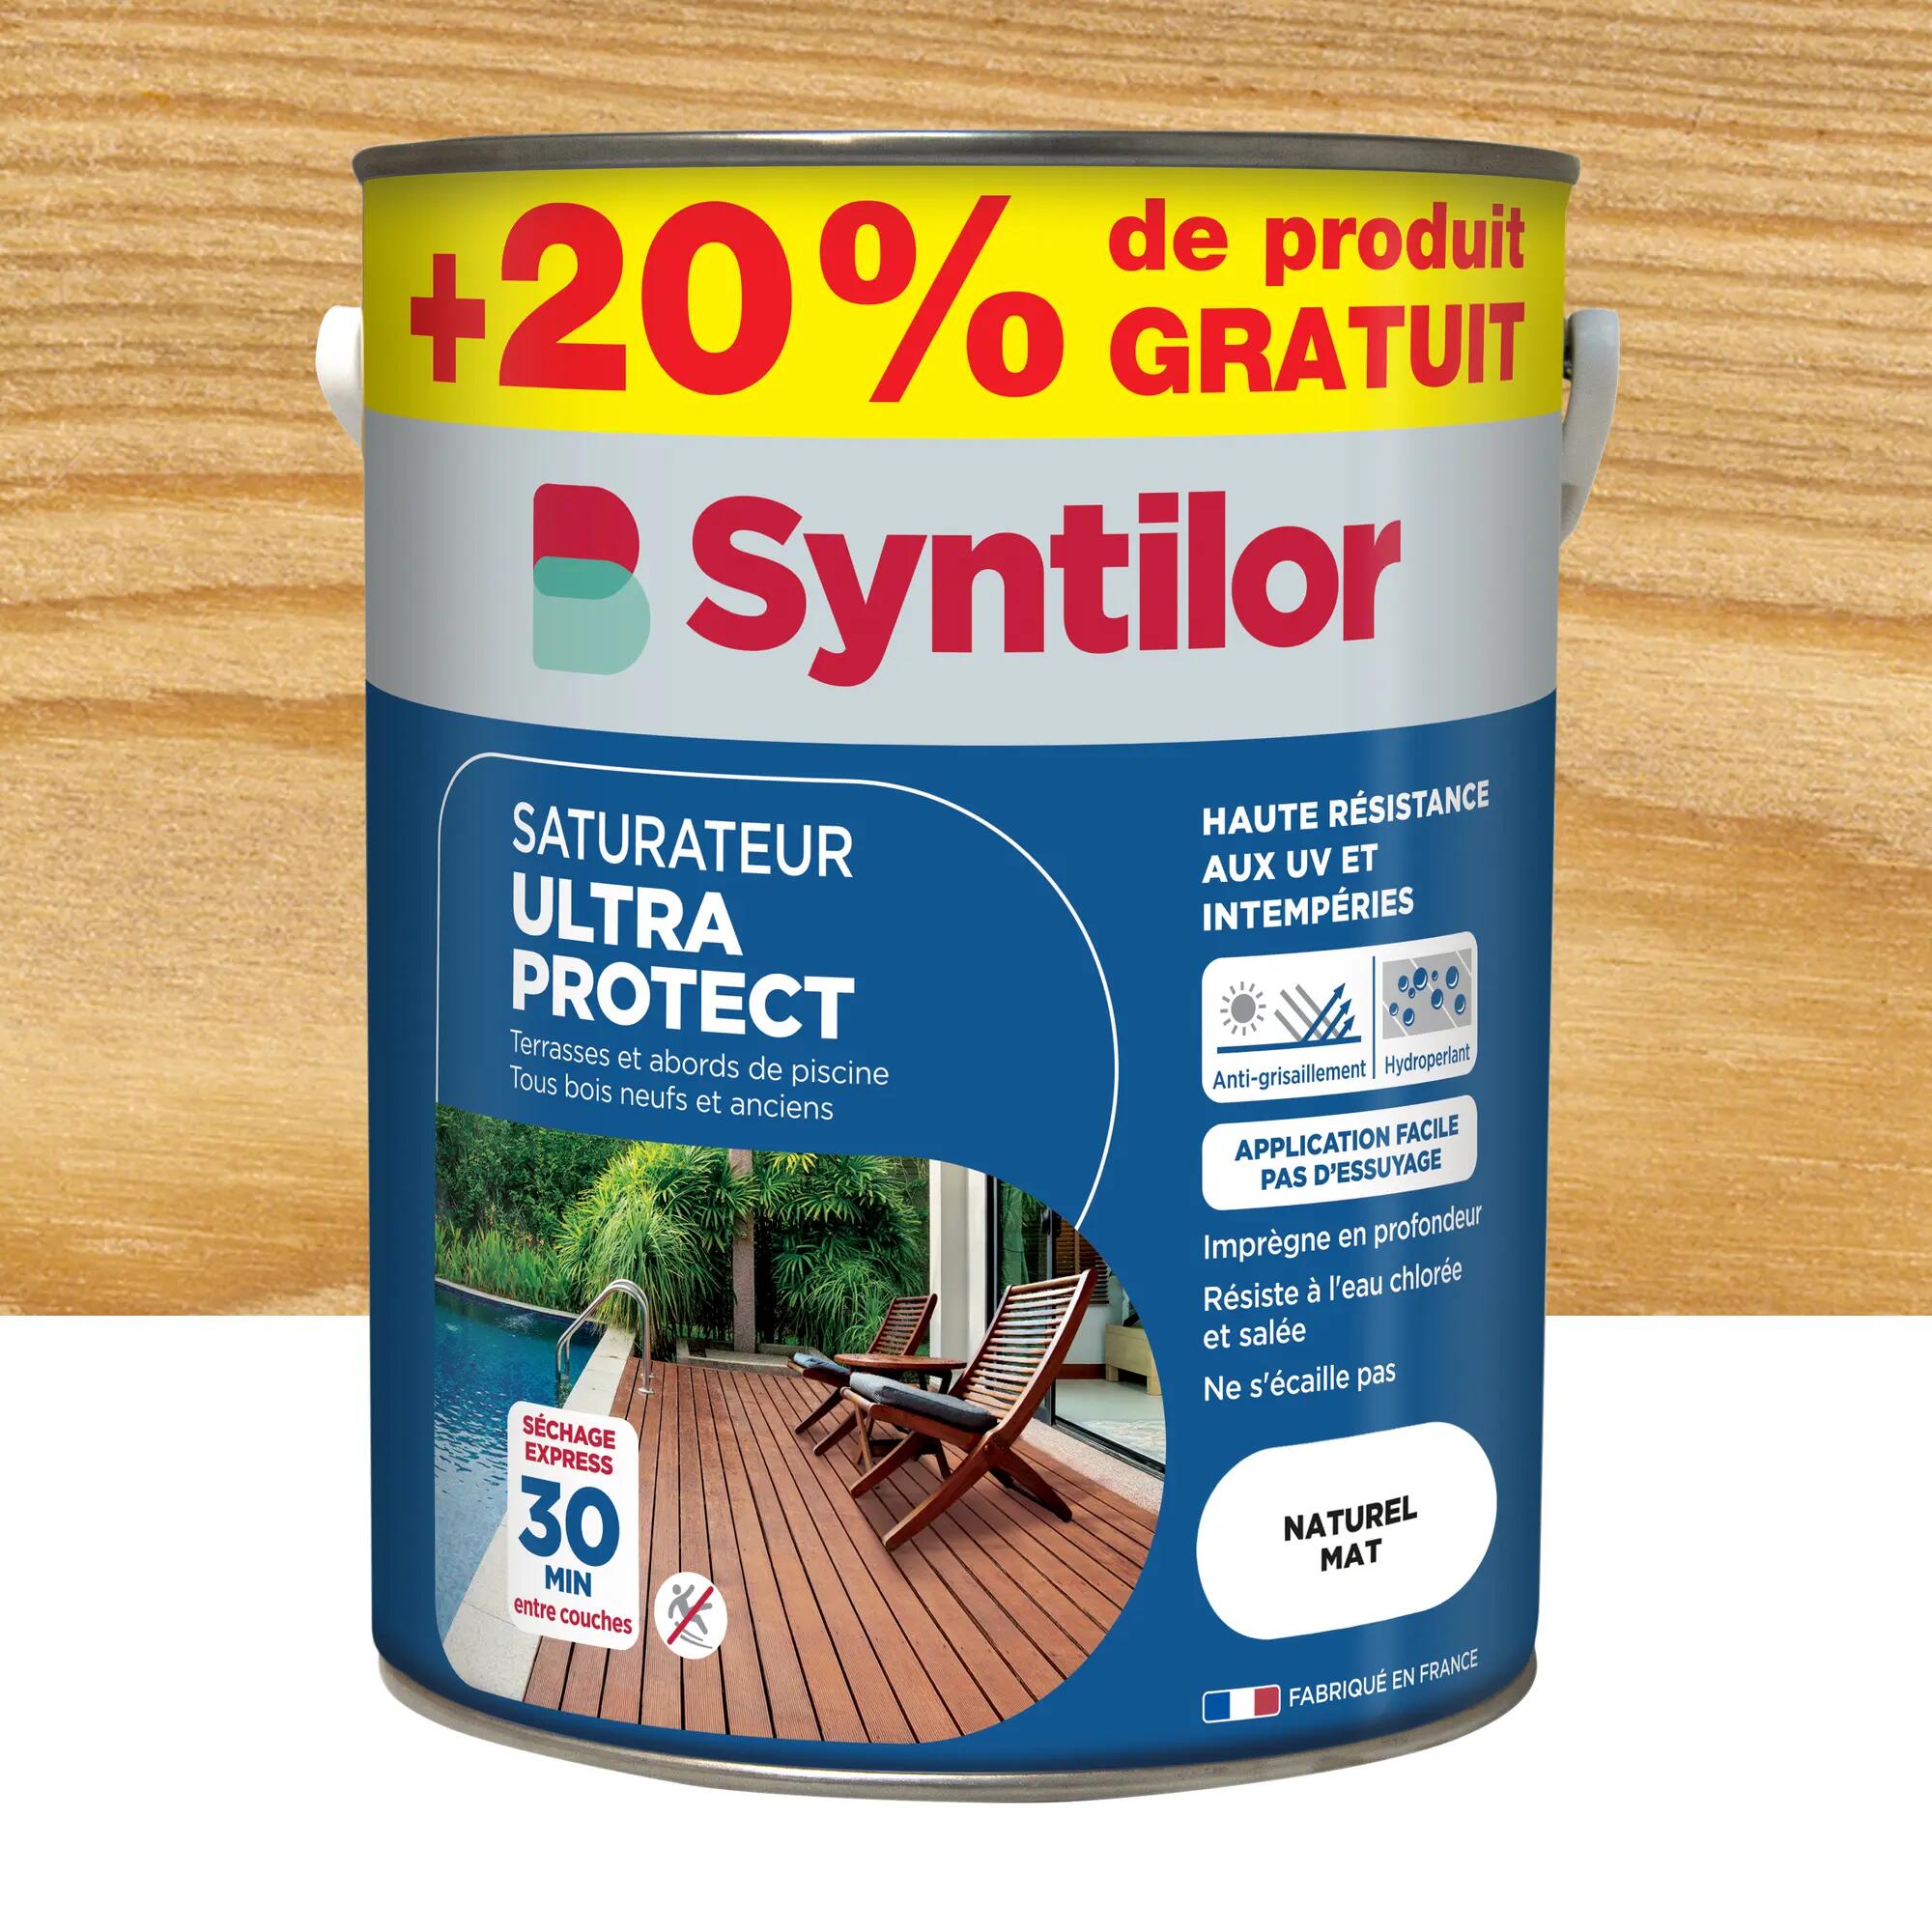 Saturateur pour bois extérieur SYNTILOR Ultra protect naturel mat 5L+20%  gratuit